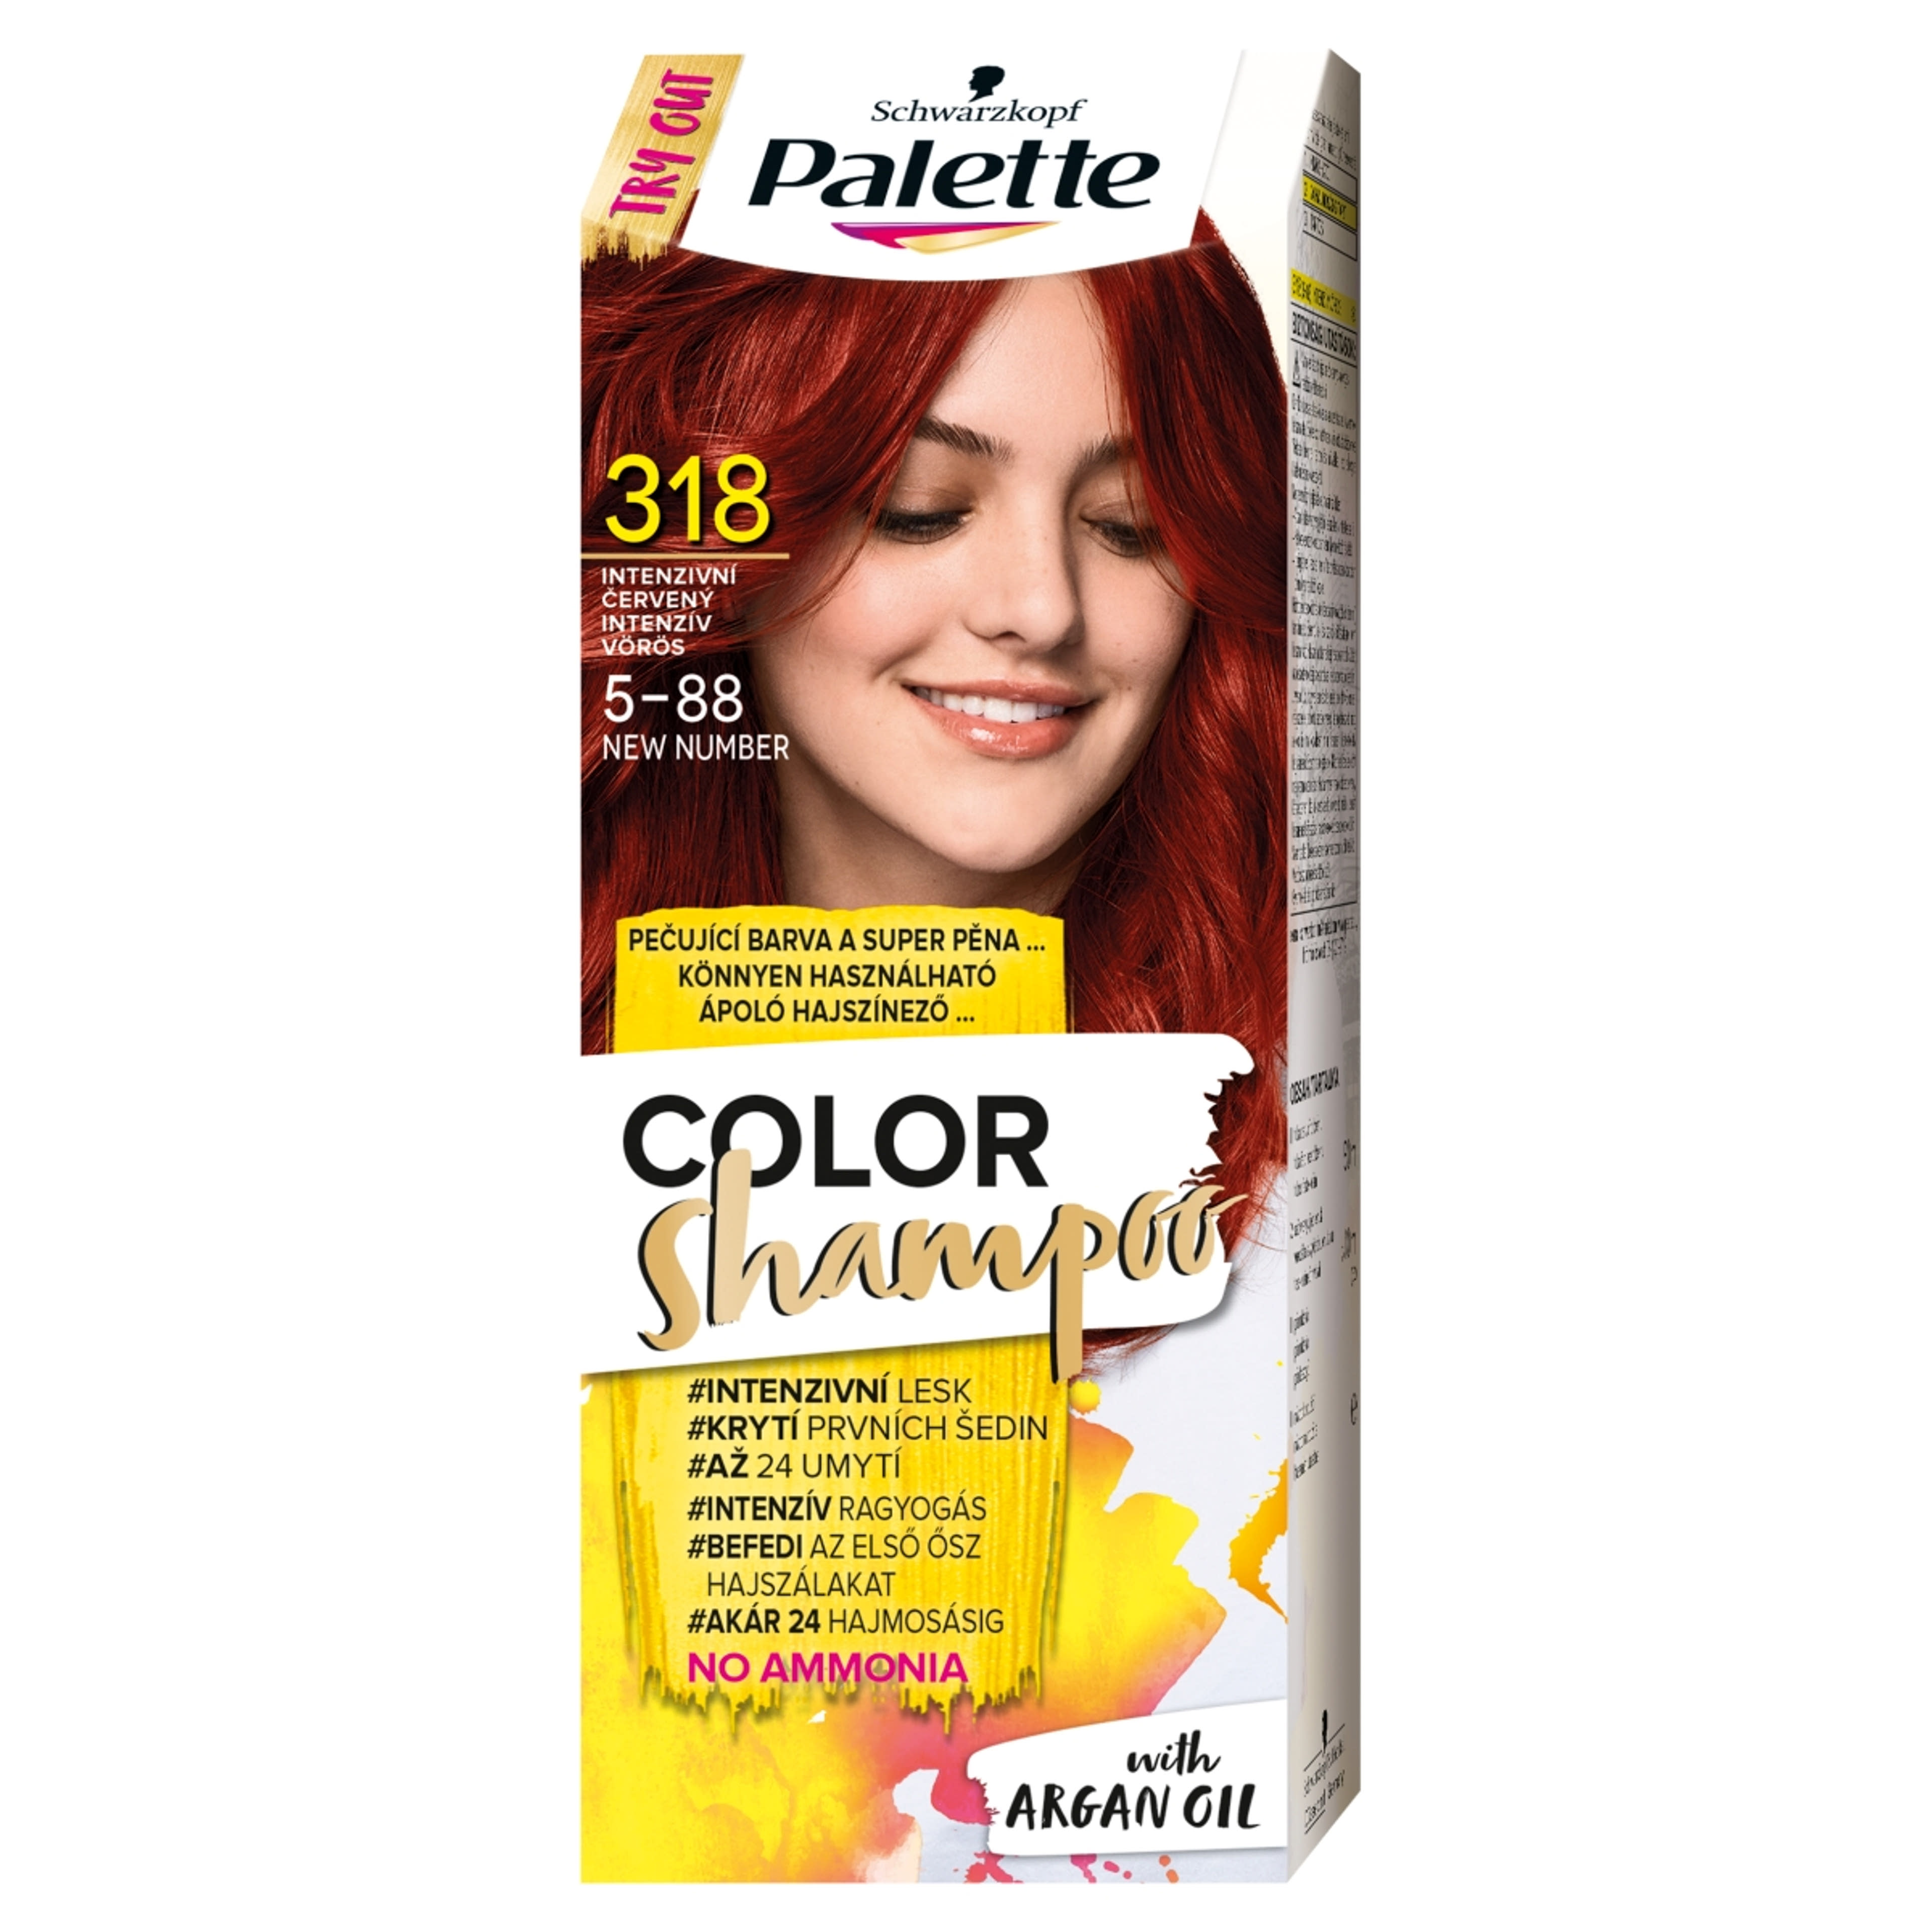 Schwarzkopf Palette Color Shampoo hajfesték 318 intenzív vörös - 1 db